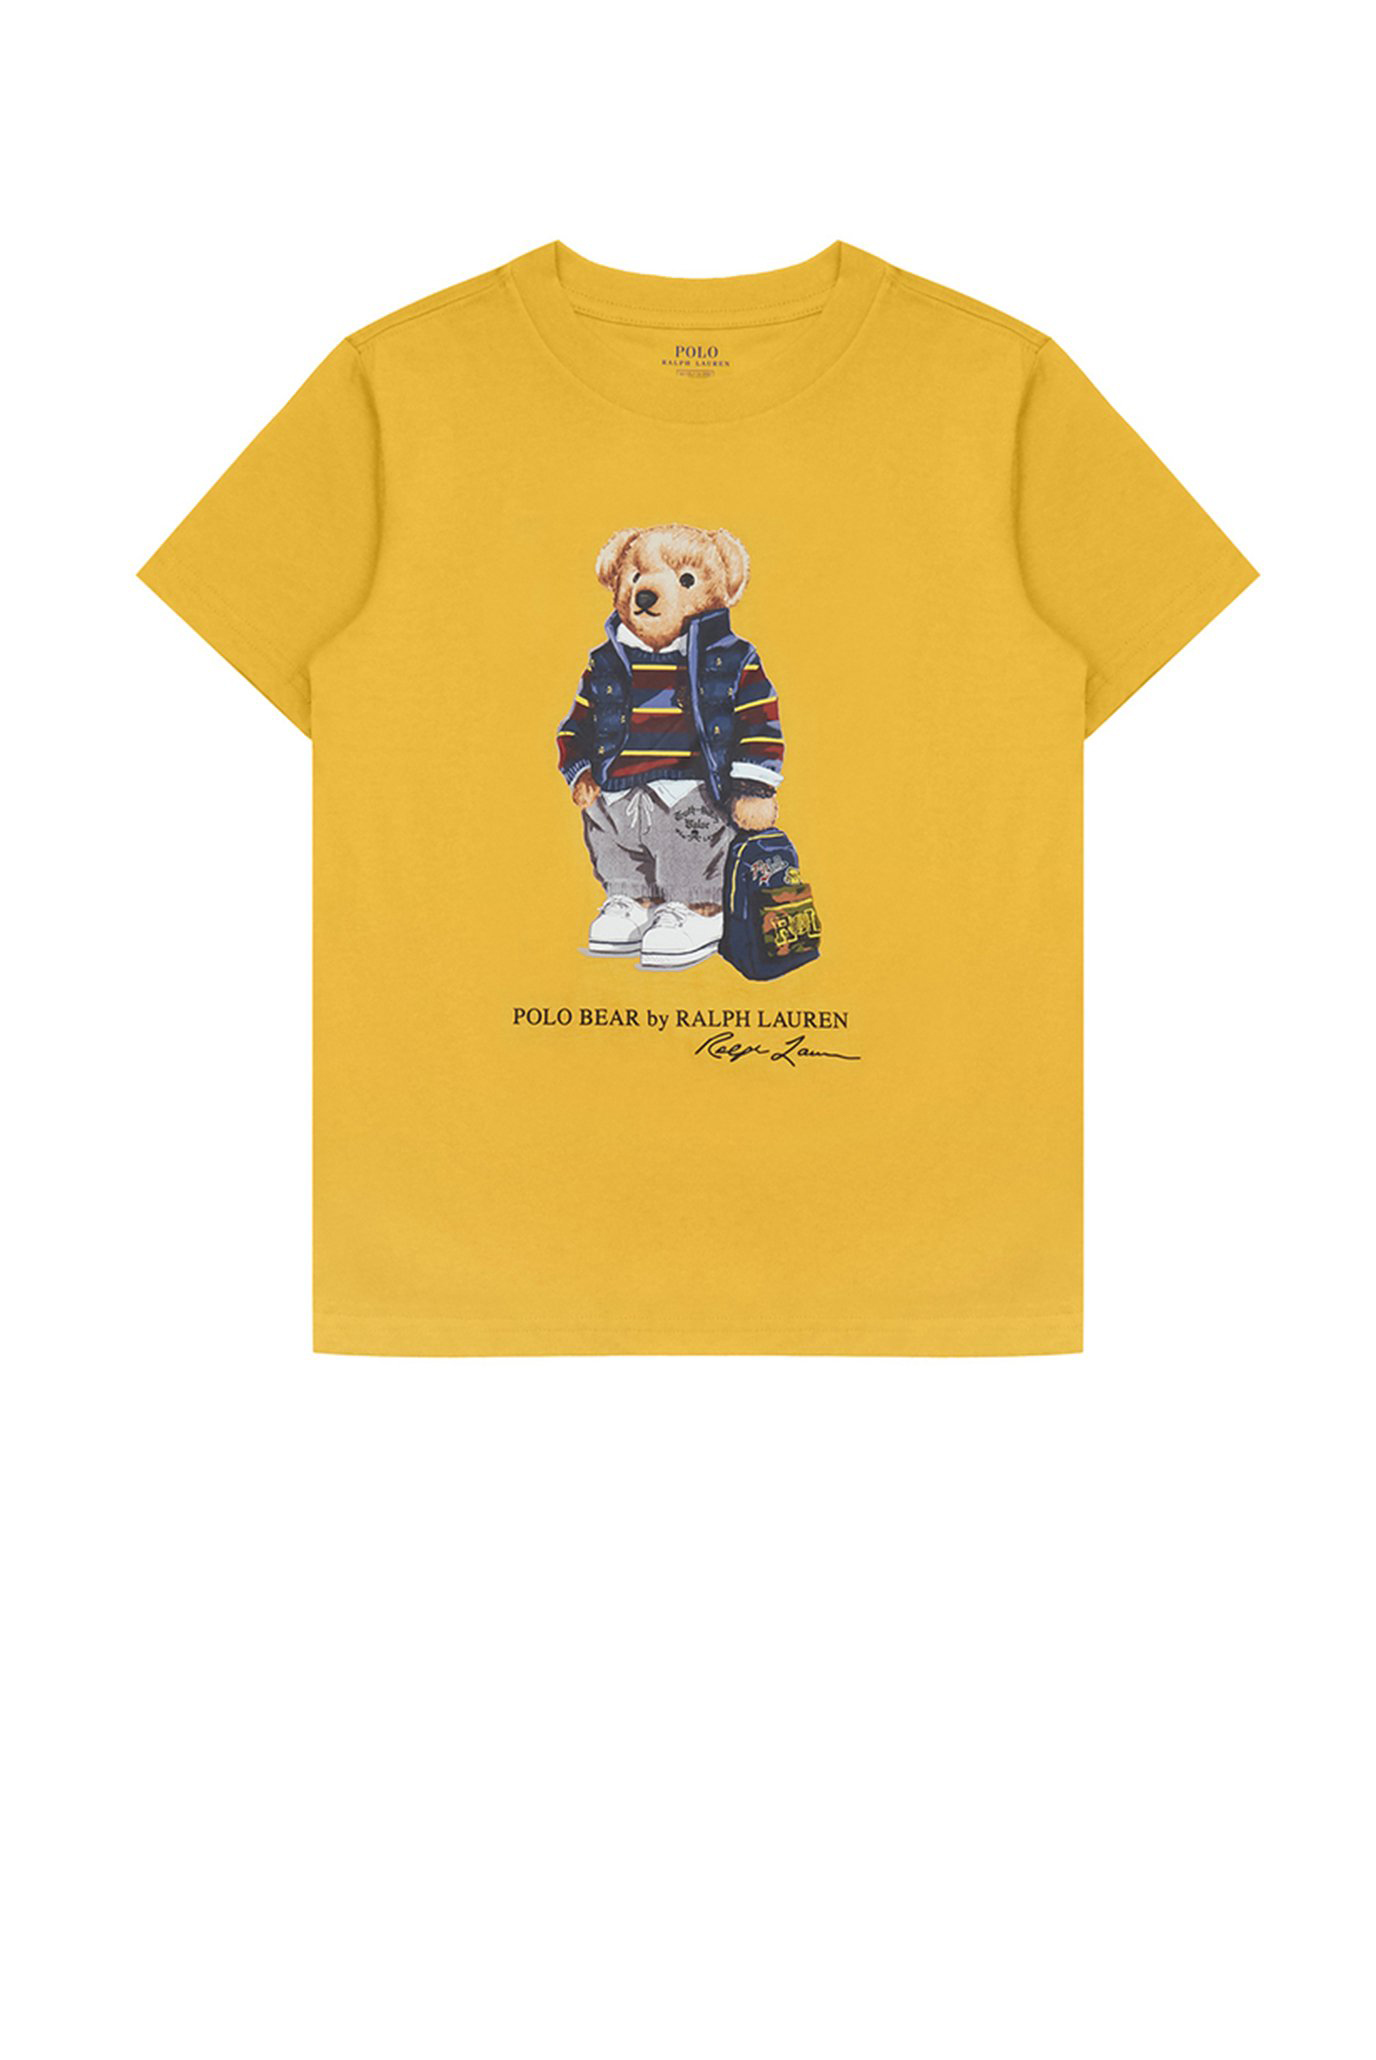 Детская желтая футболка 1